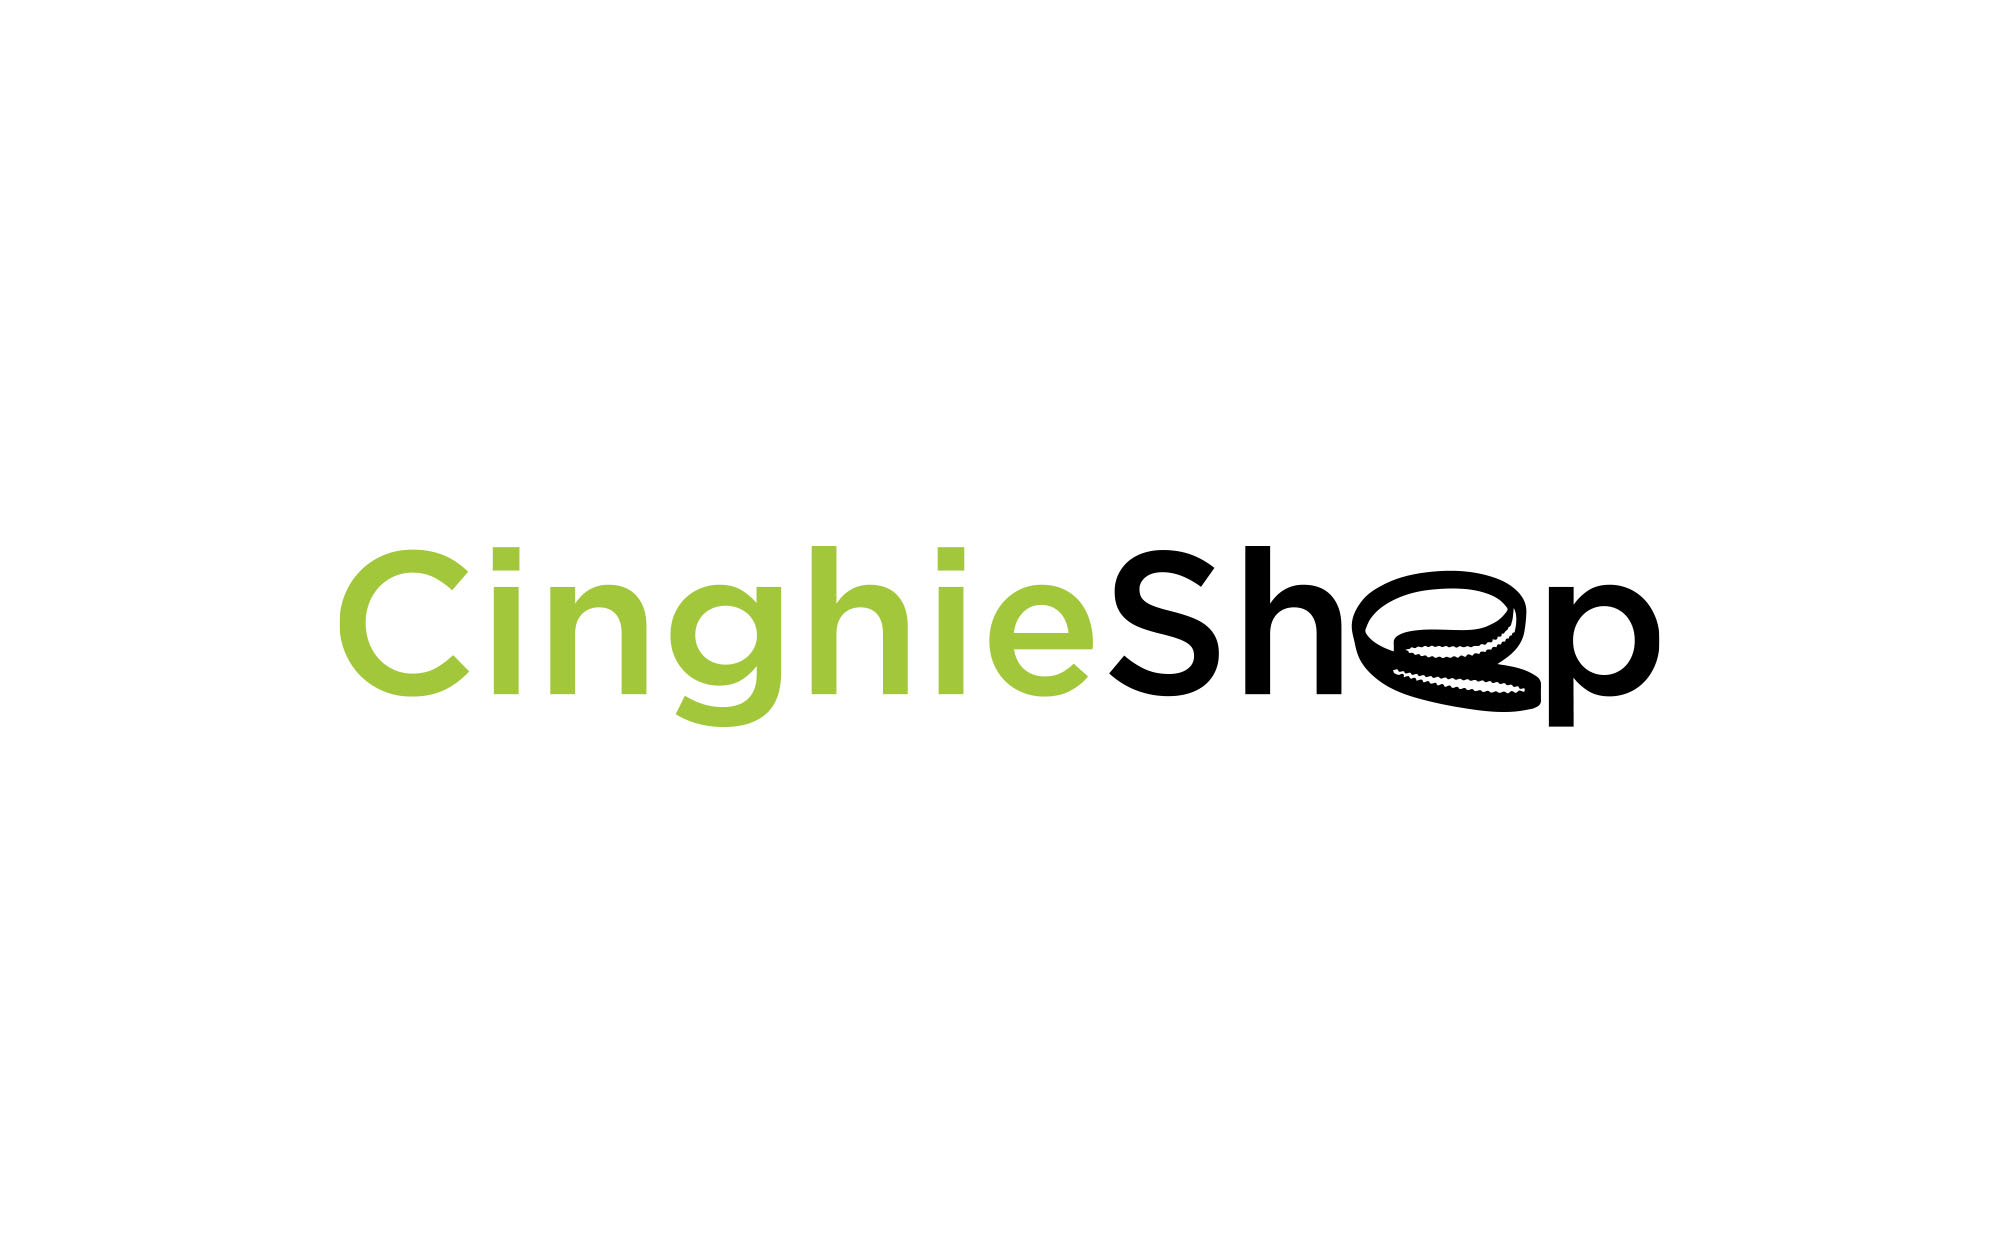 Cinghie Shop